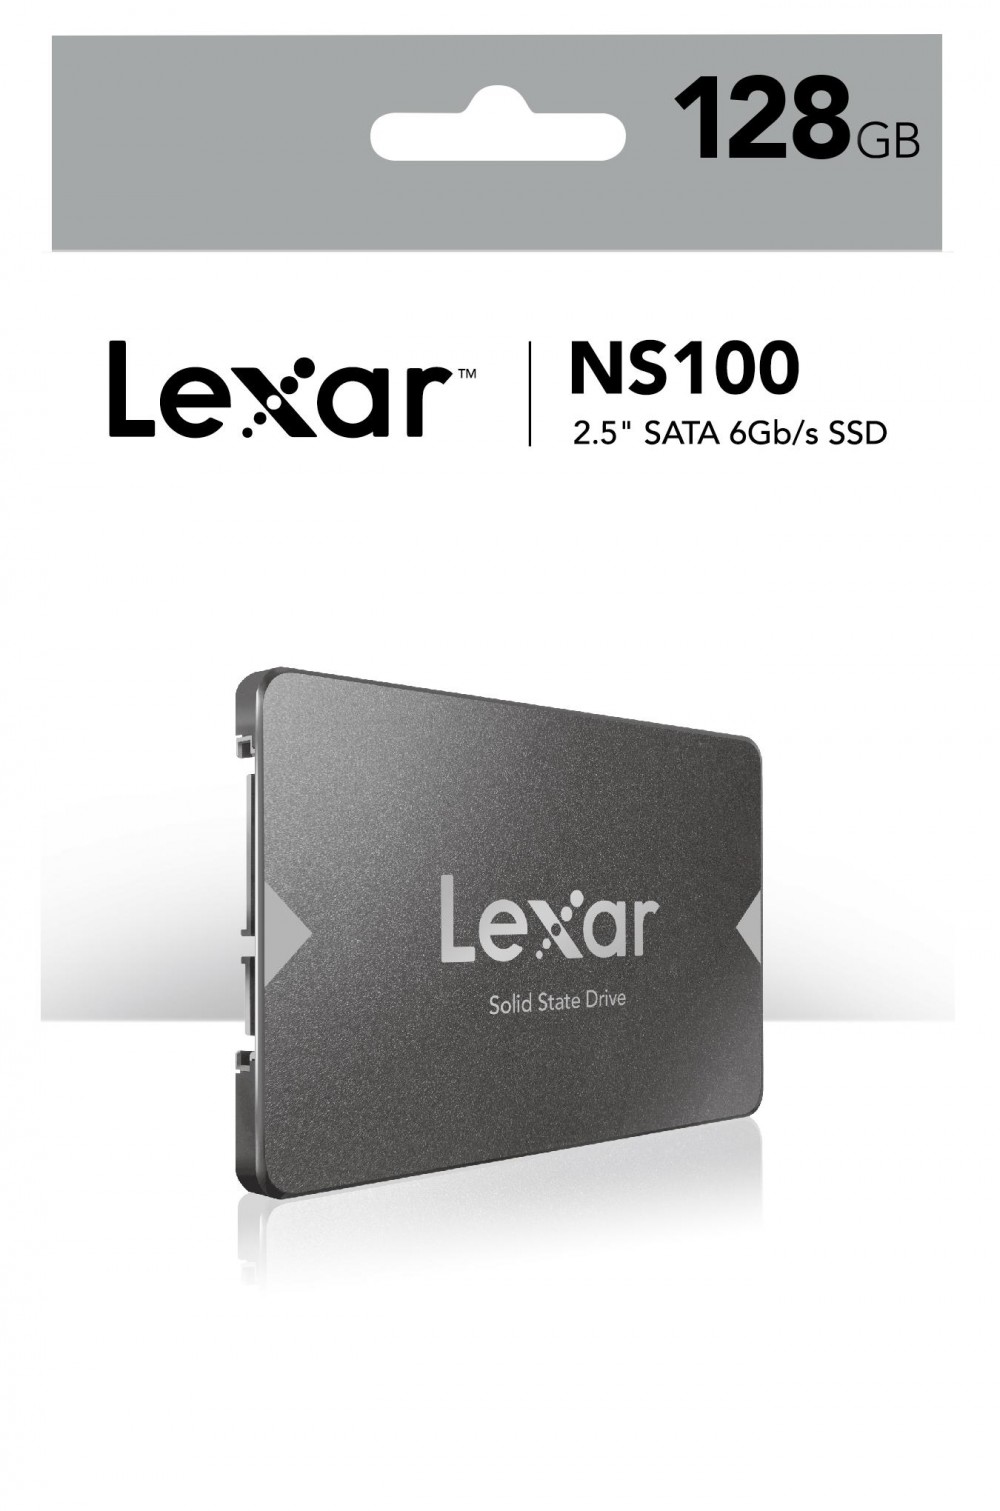 Ổ cưng SSD SATA LEXAR 128GB